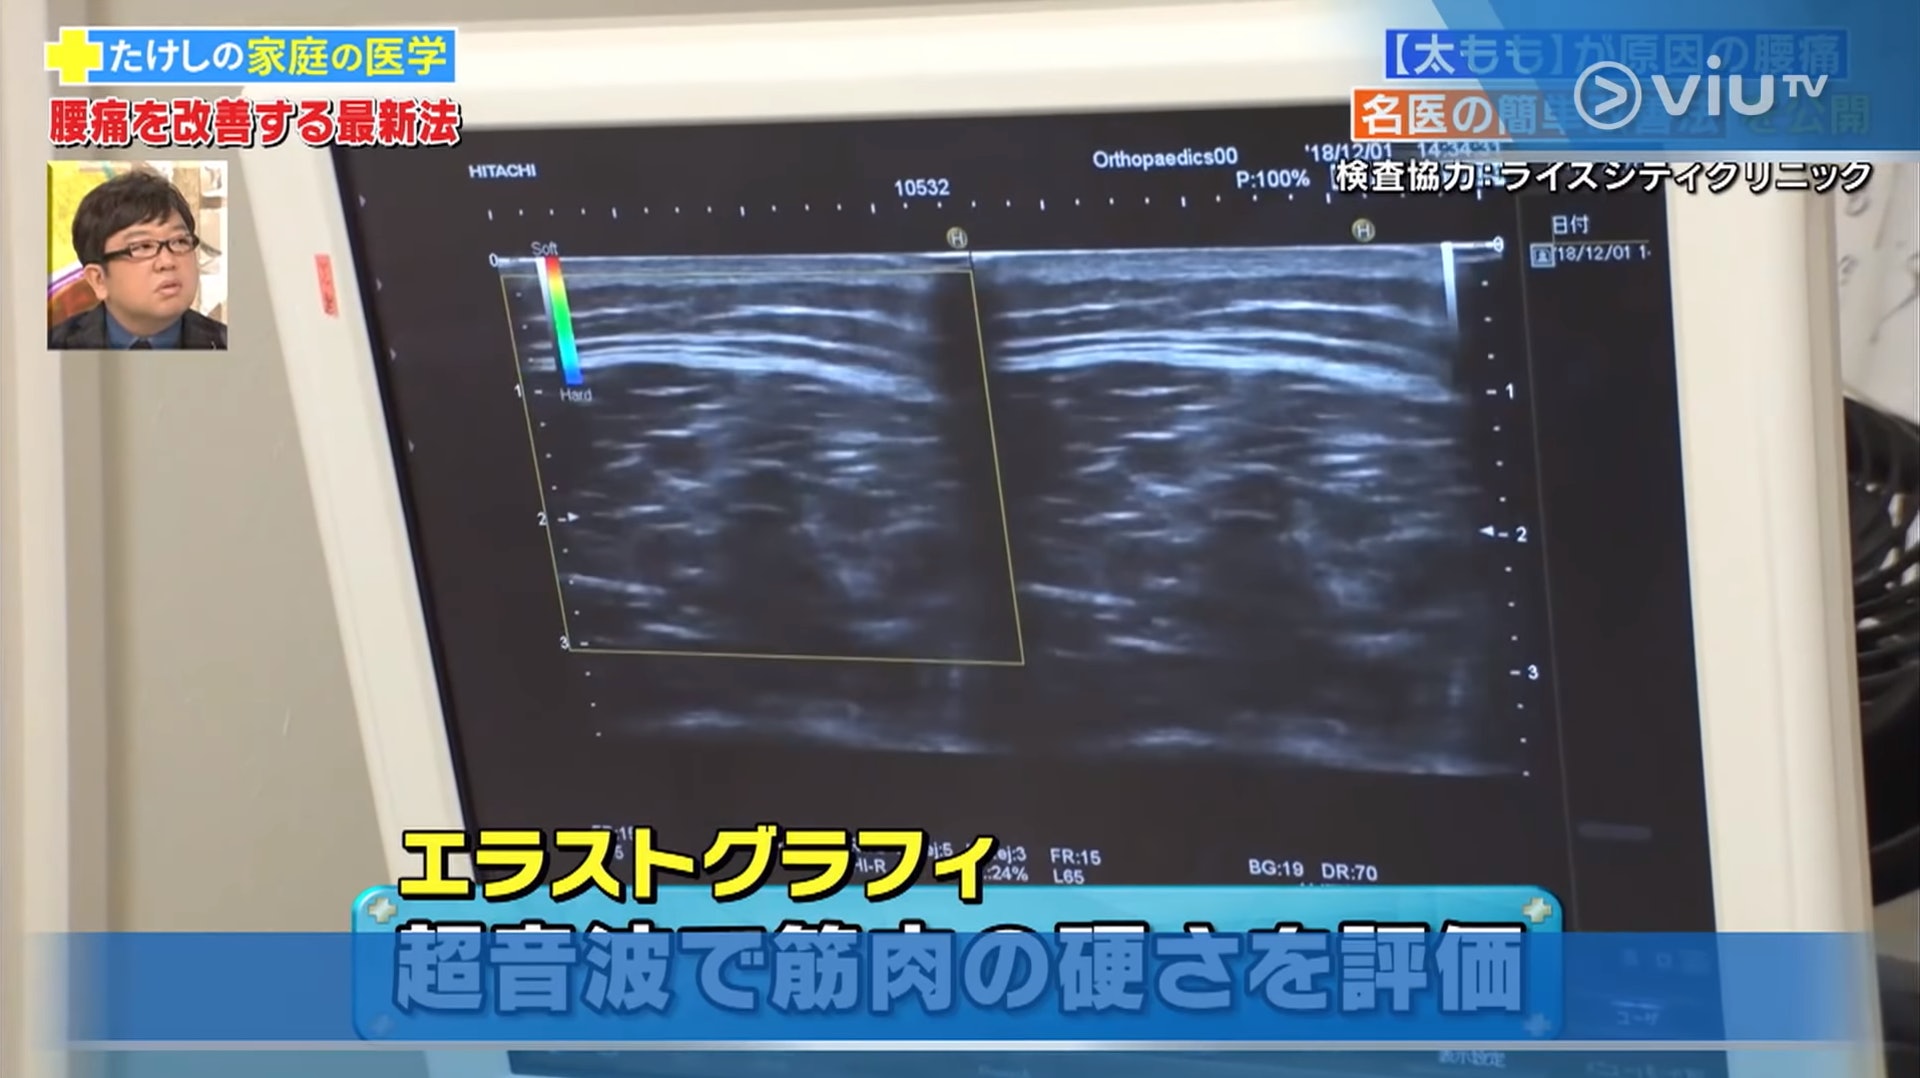 超聲波影像儀器檢查可評估大腿肌肉硬度（viu TV《恐怖醫學》影片截圖）